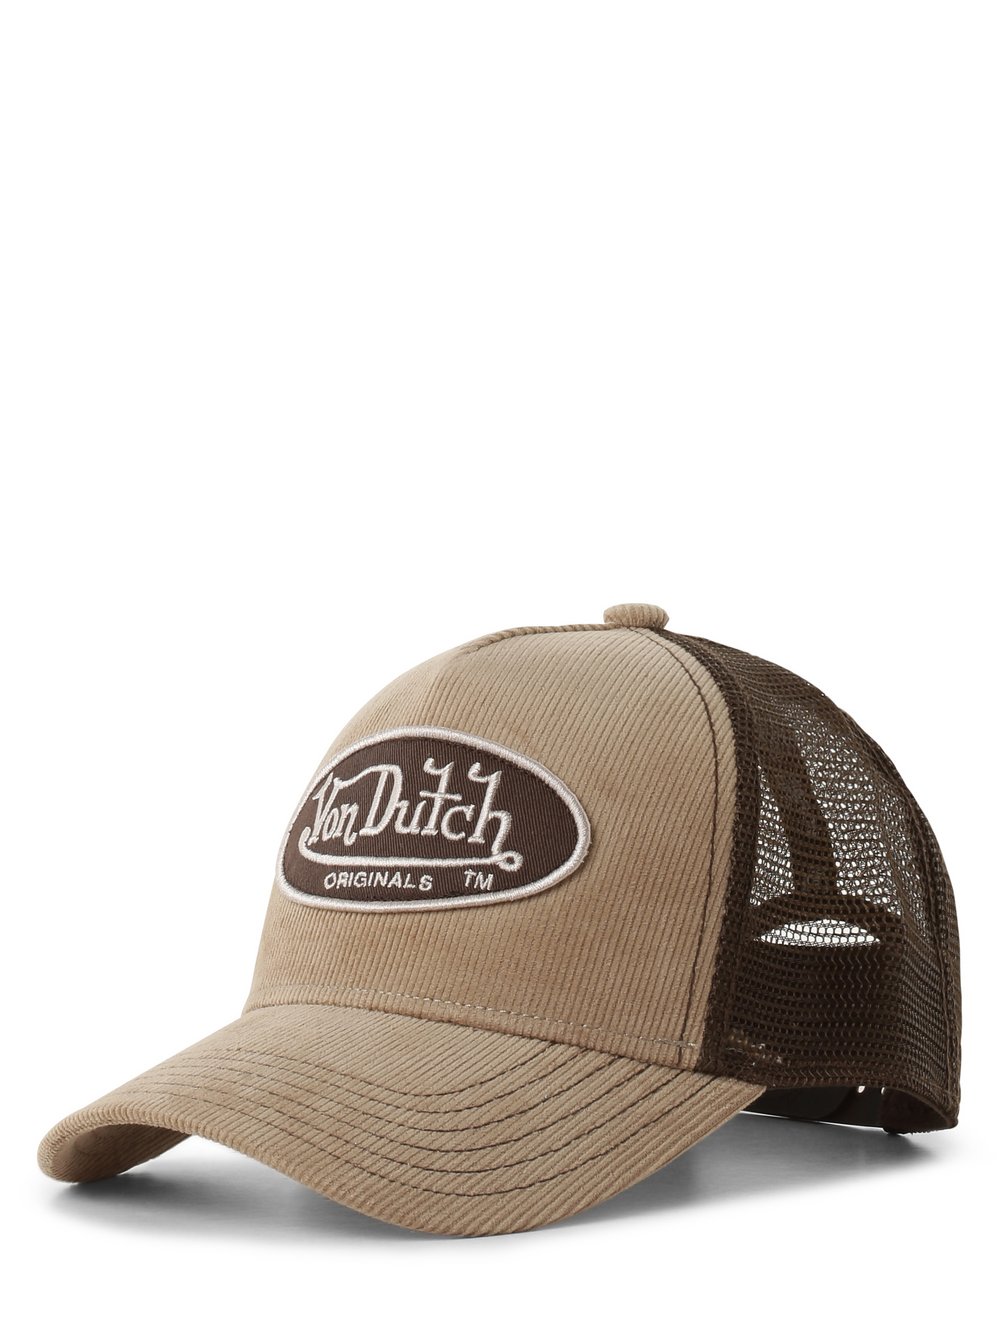 Von Dutch - Damska czapka z daszkiem  Trucker Boston, beżowy|brązowy